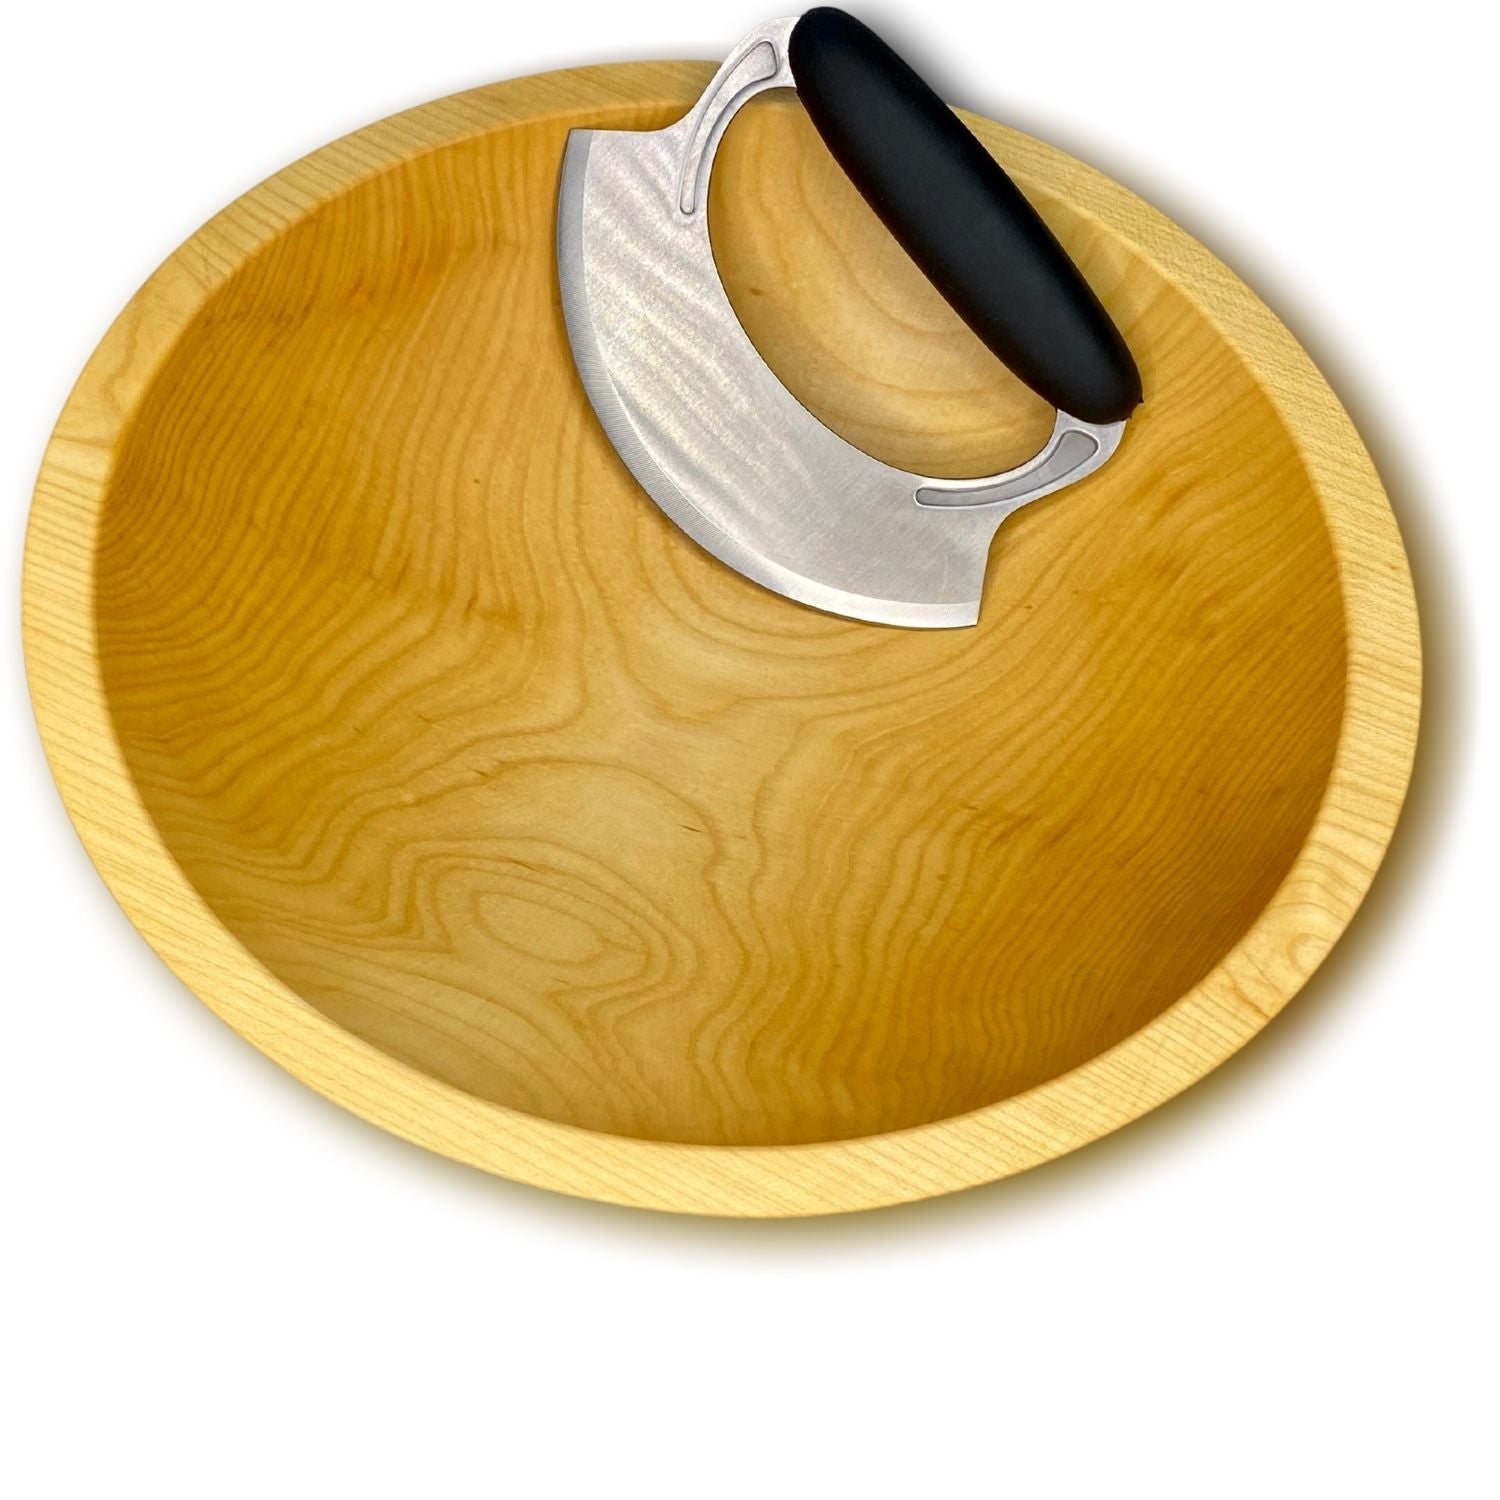 Wood Chopping Bowl and Mezzaluna, NH Bowl and Board